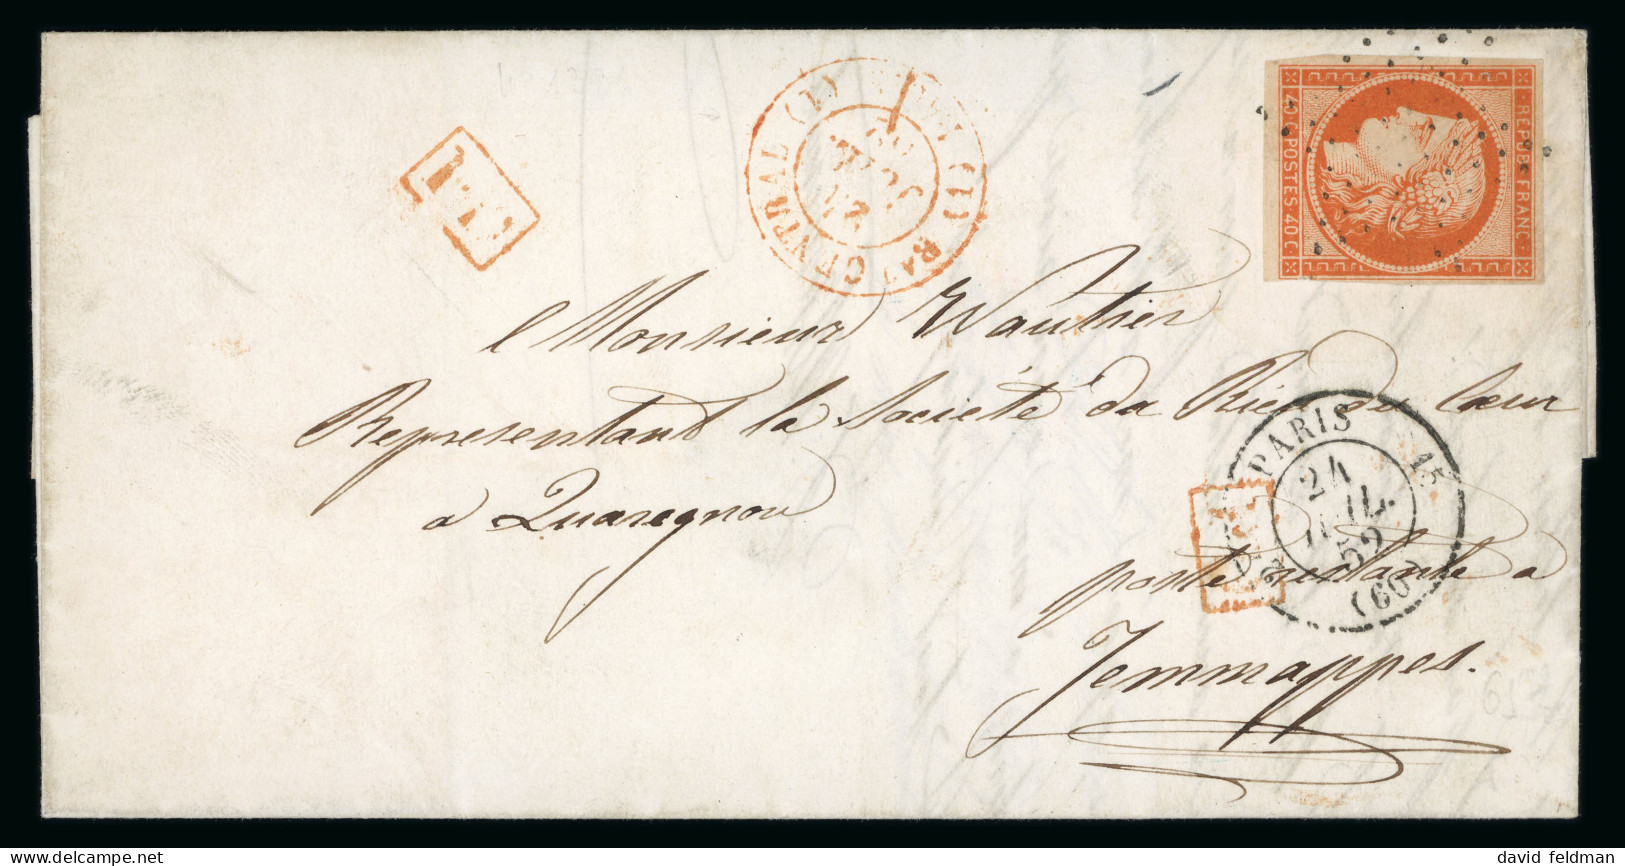 1852, Lettre De Paris Pour Jemappes (Belgique), Affranchissement - 1849-1850 Ceres